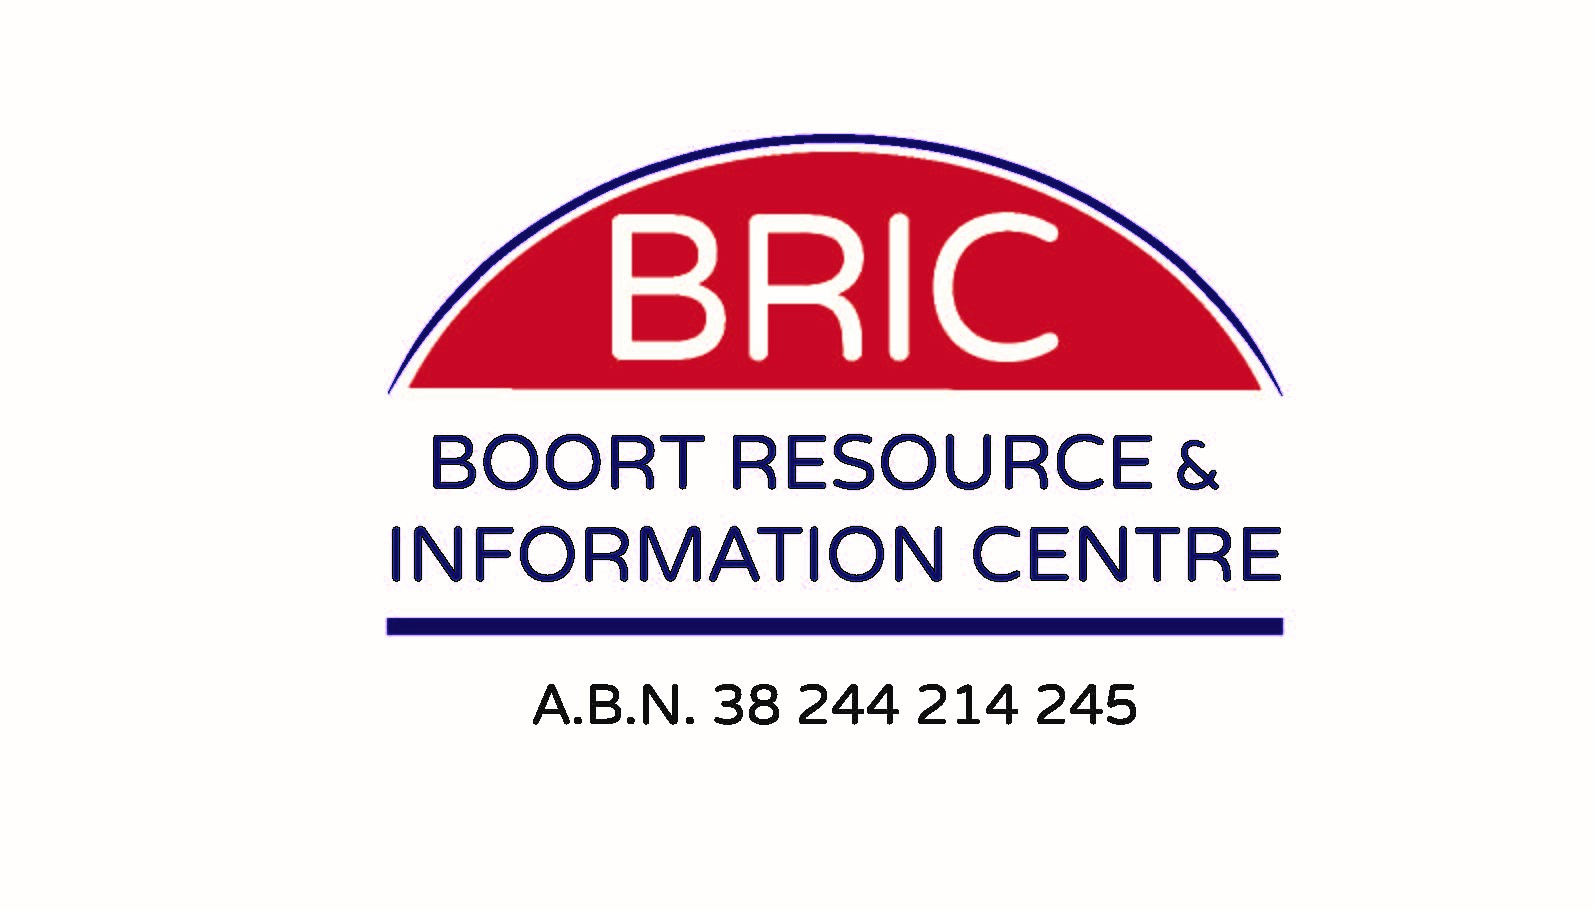 Boort Resource & Information Centre